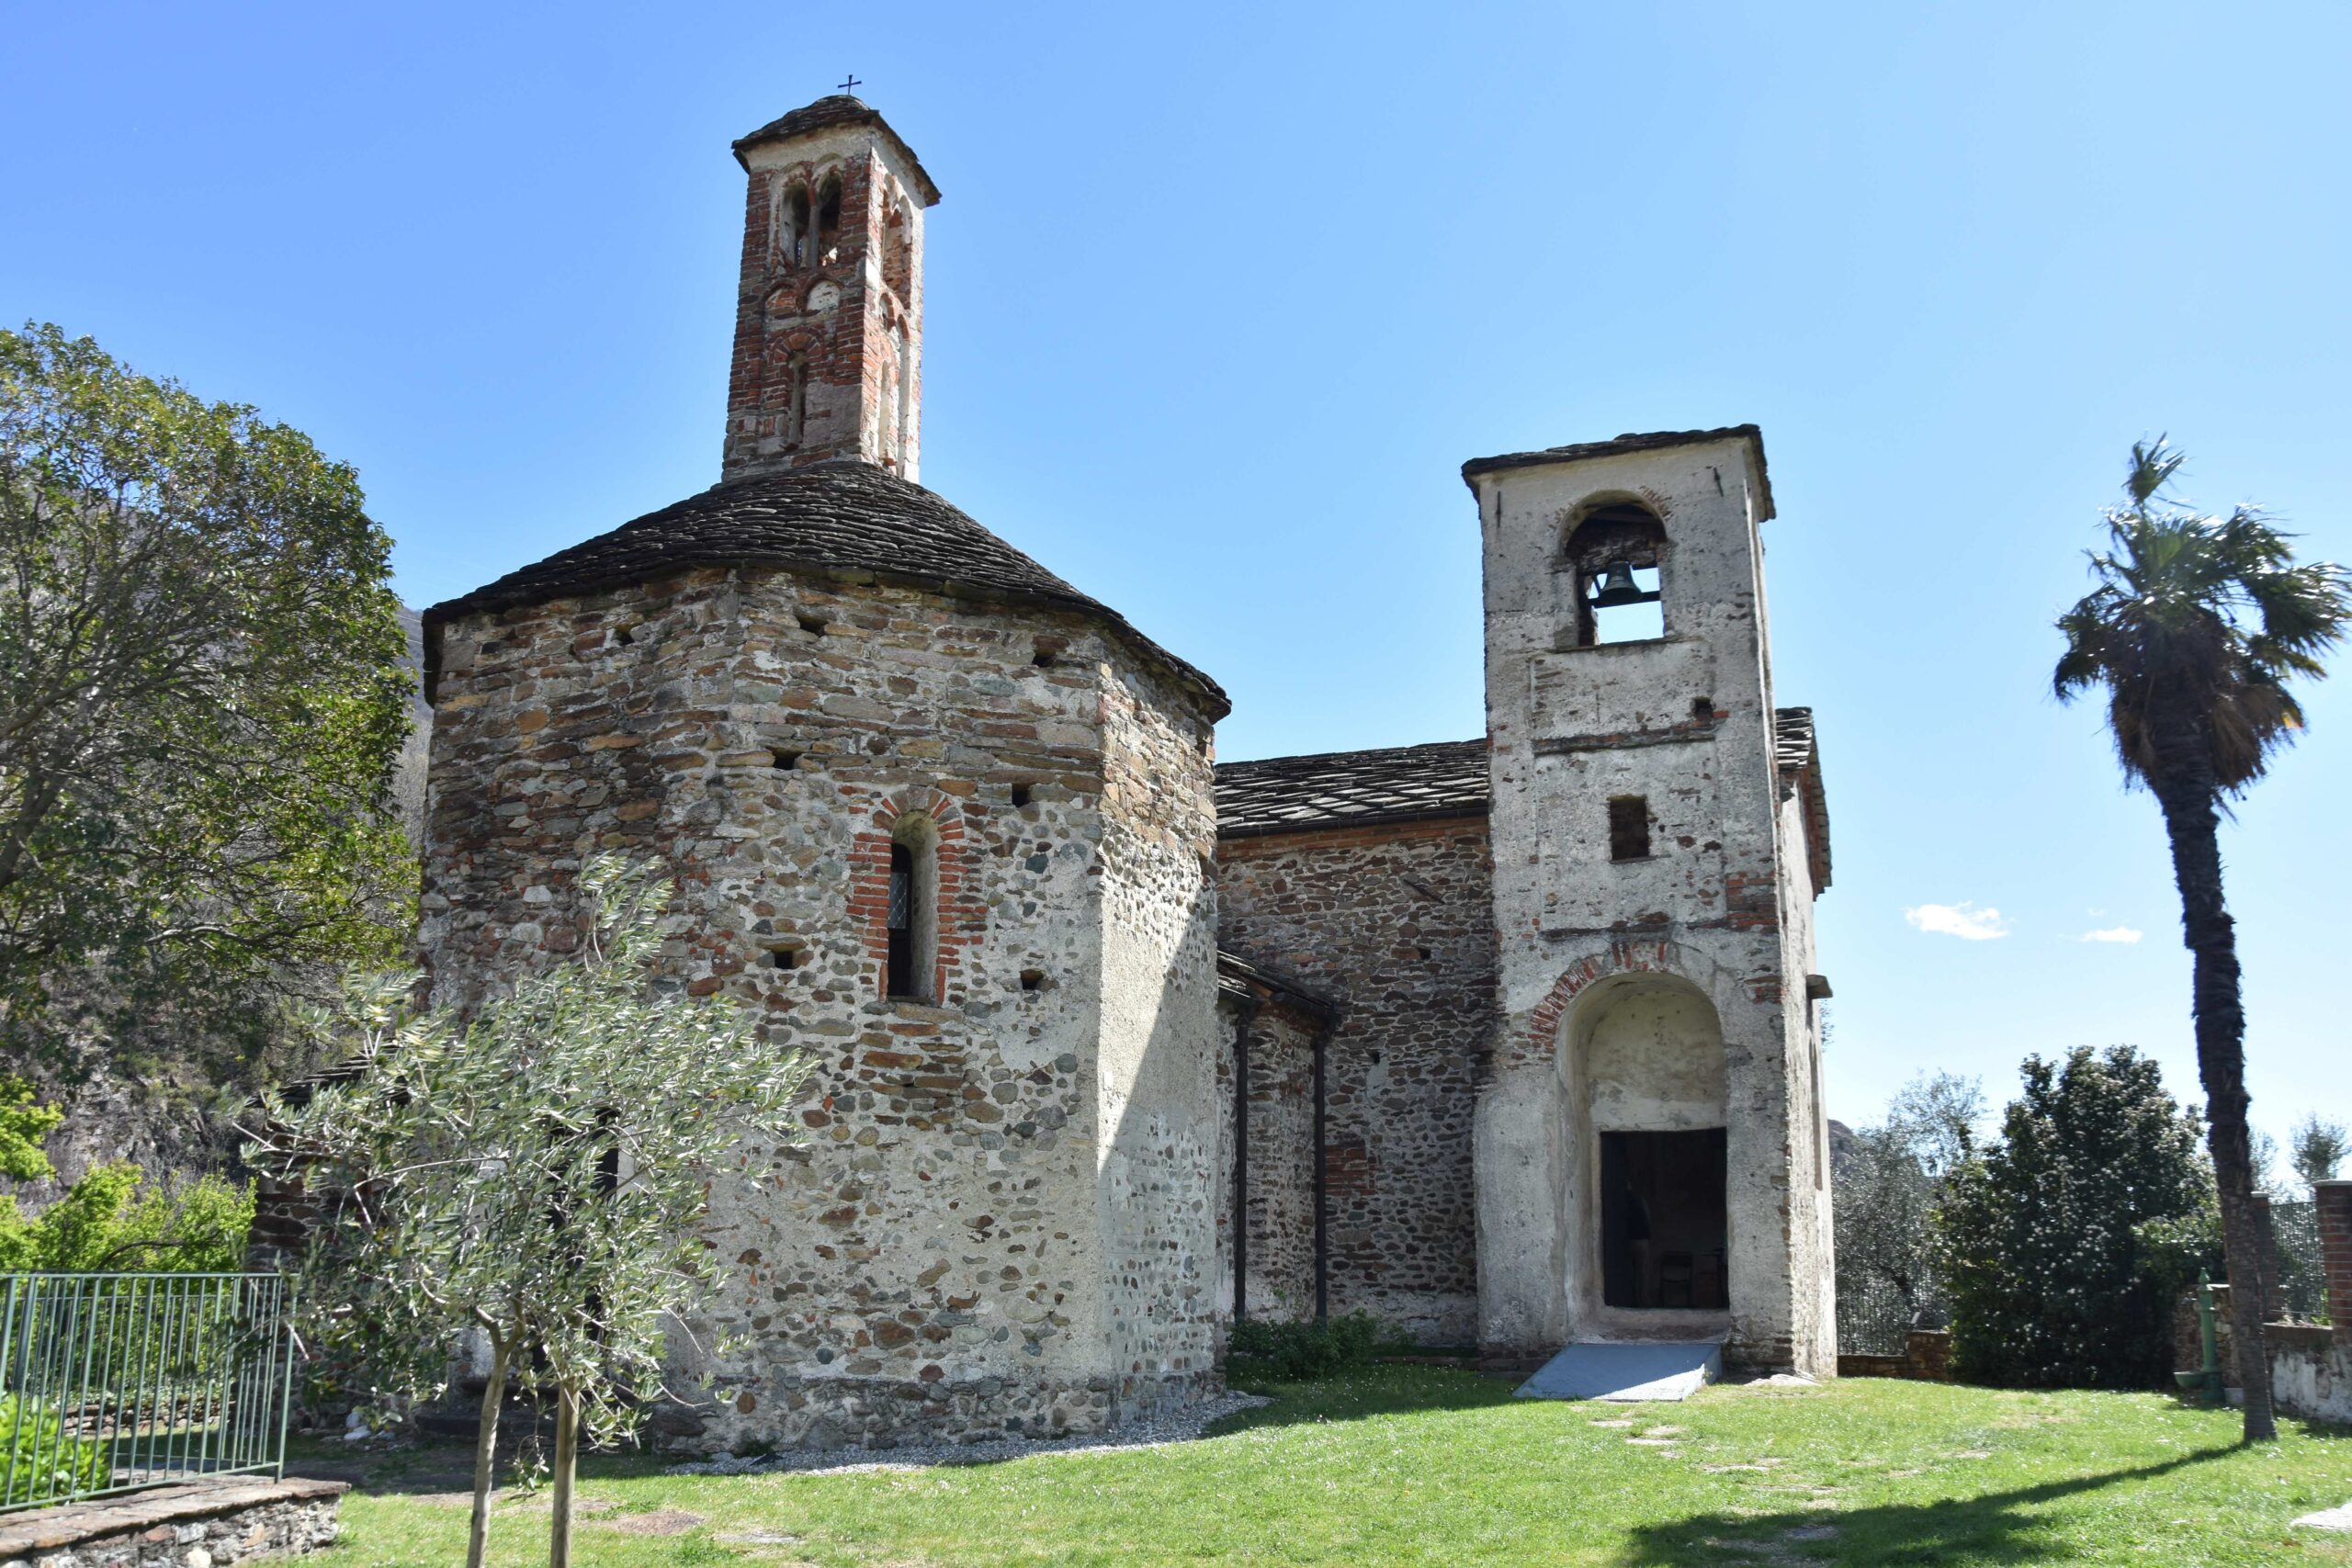 Settimo Vittone: Battistero di San Giovanni e Pieve San Lorenzo